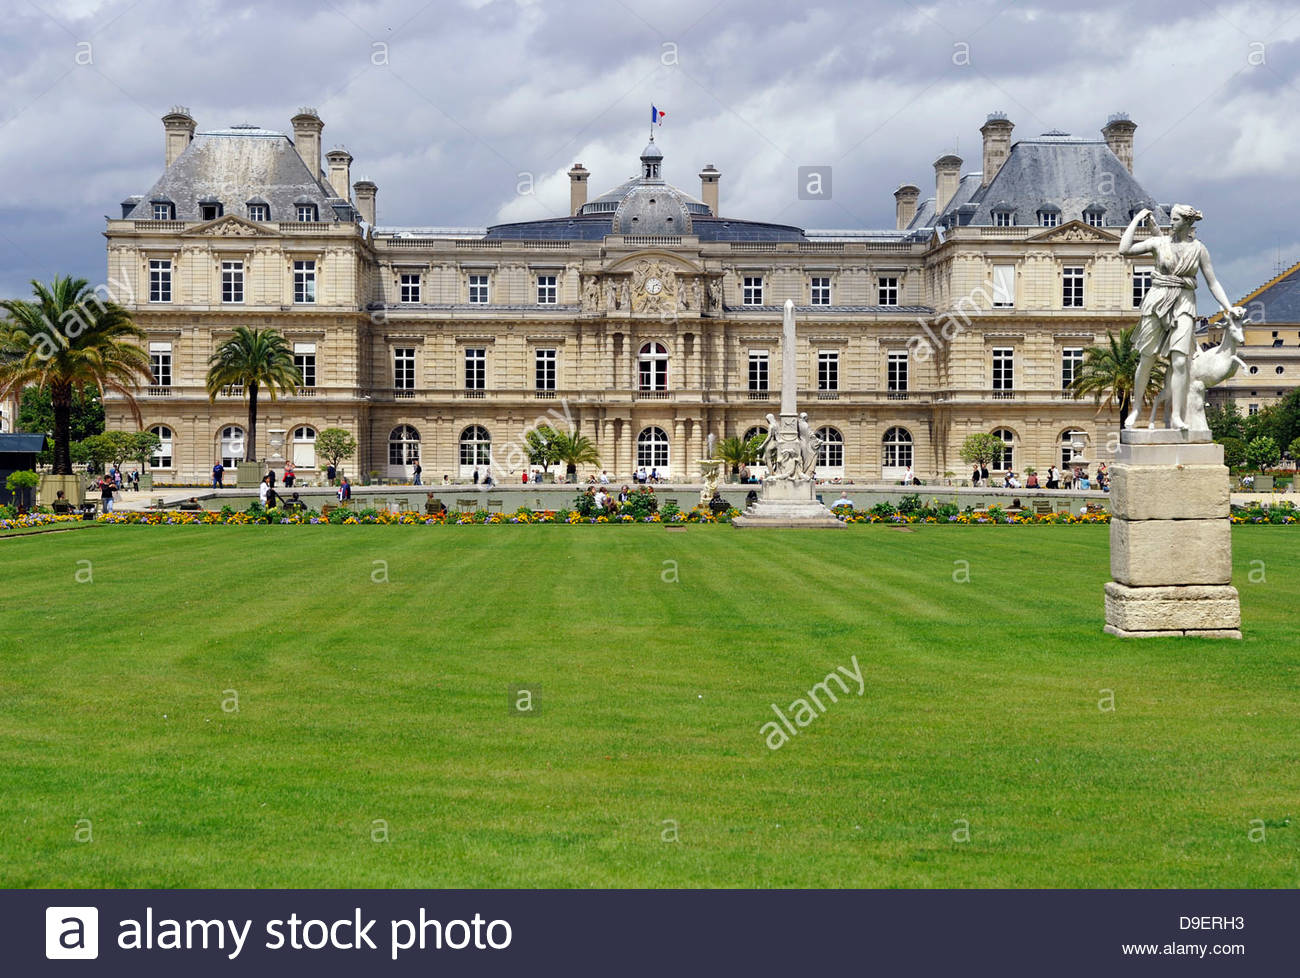 Jardin De Luxembourg Paris Charmant Palace Luxembourg Stock S & Palace Luxembourg